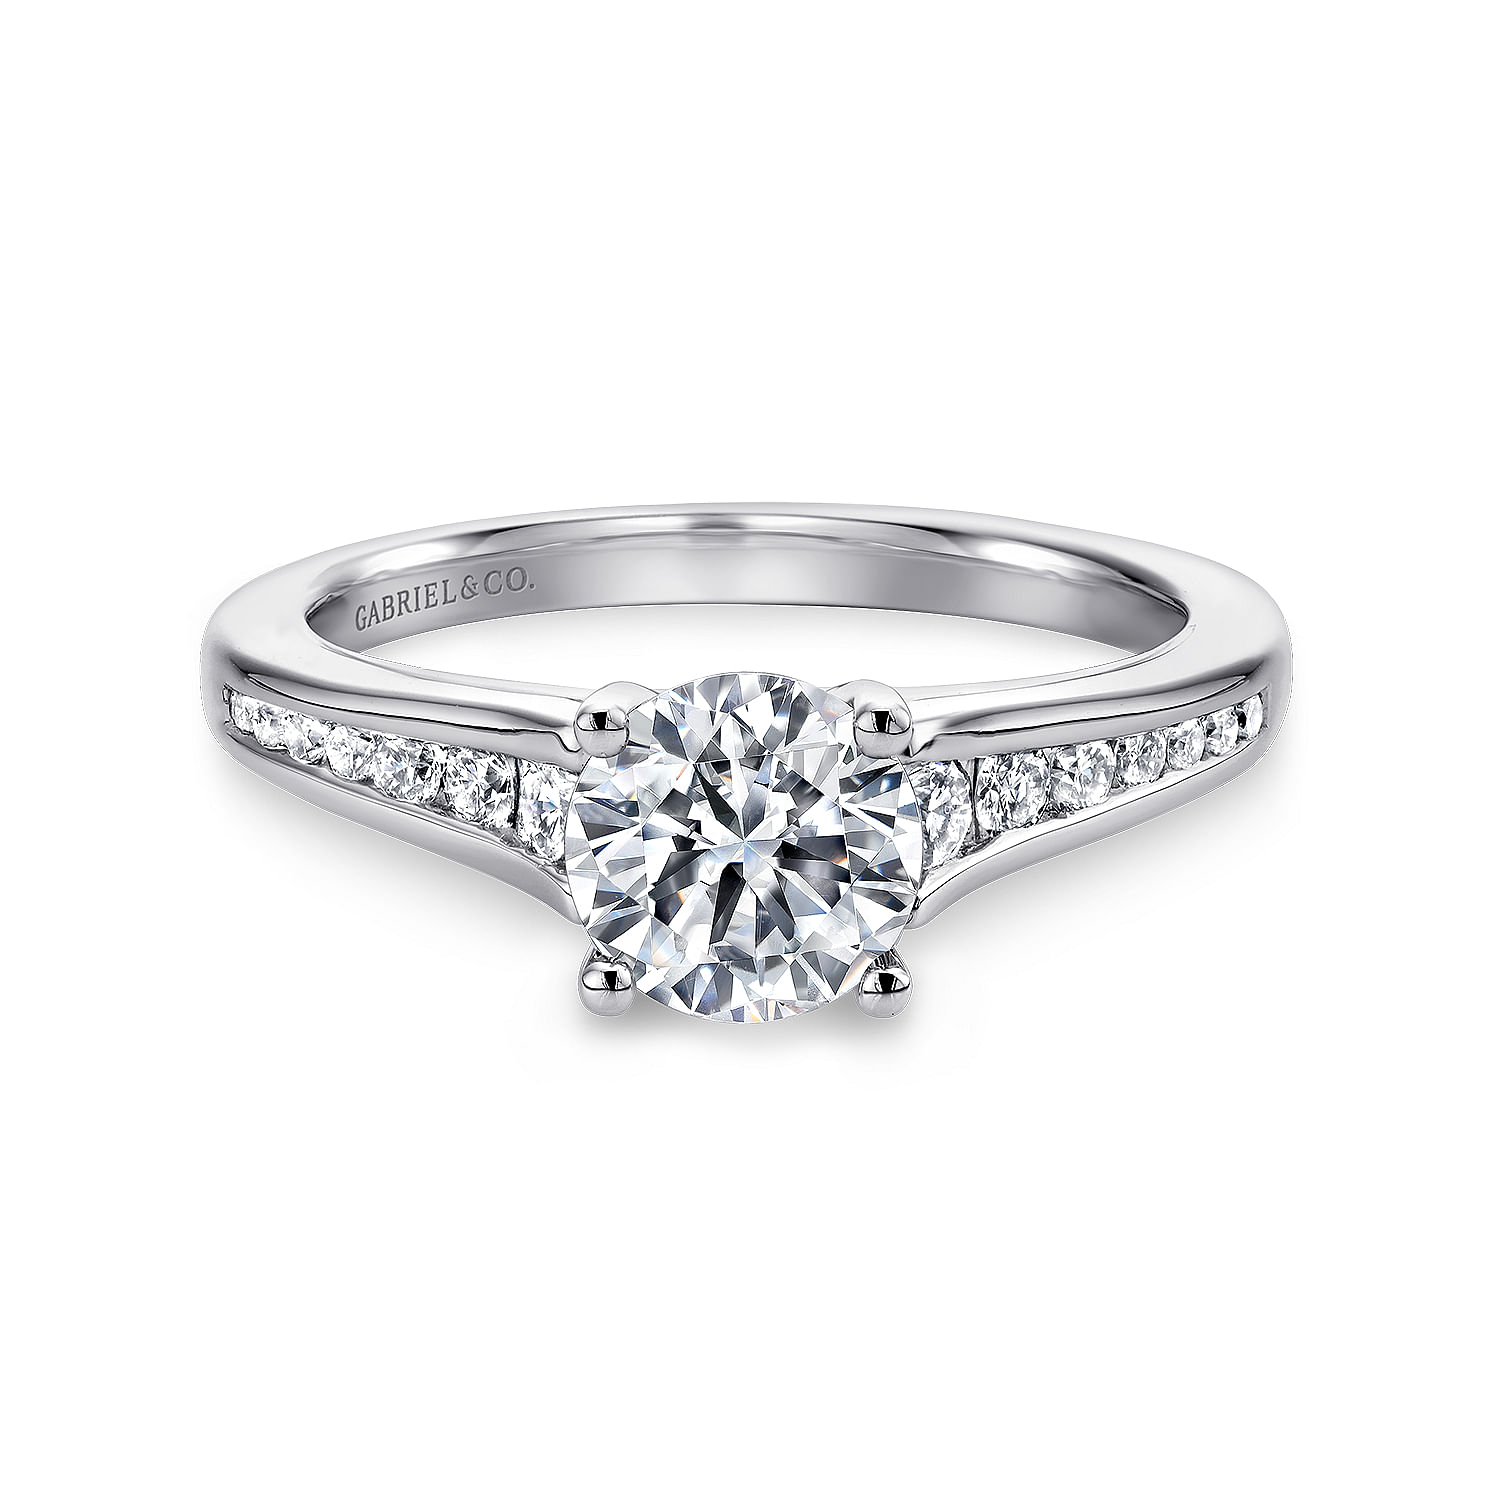 Aubrey - 14K White Gold Round Diamond Channel Set Engagement Ring